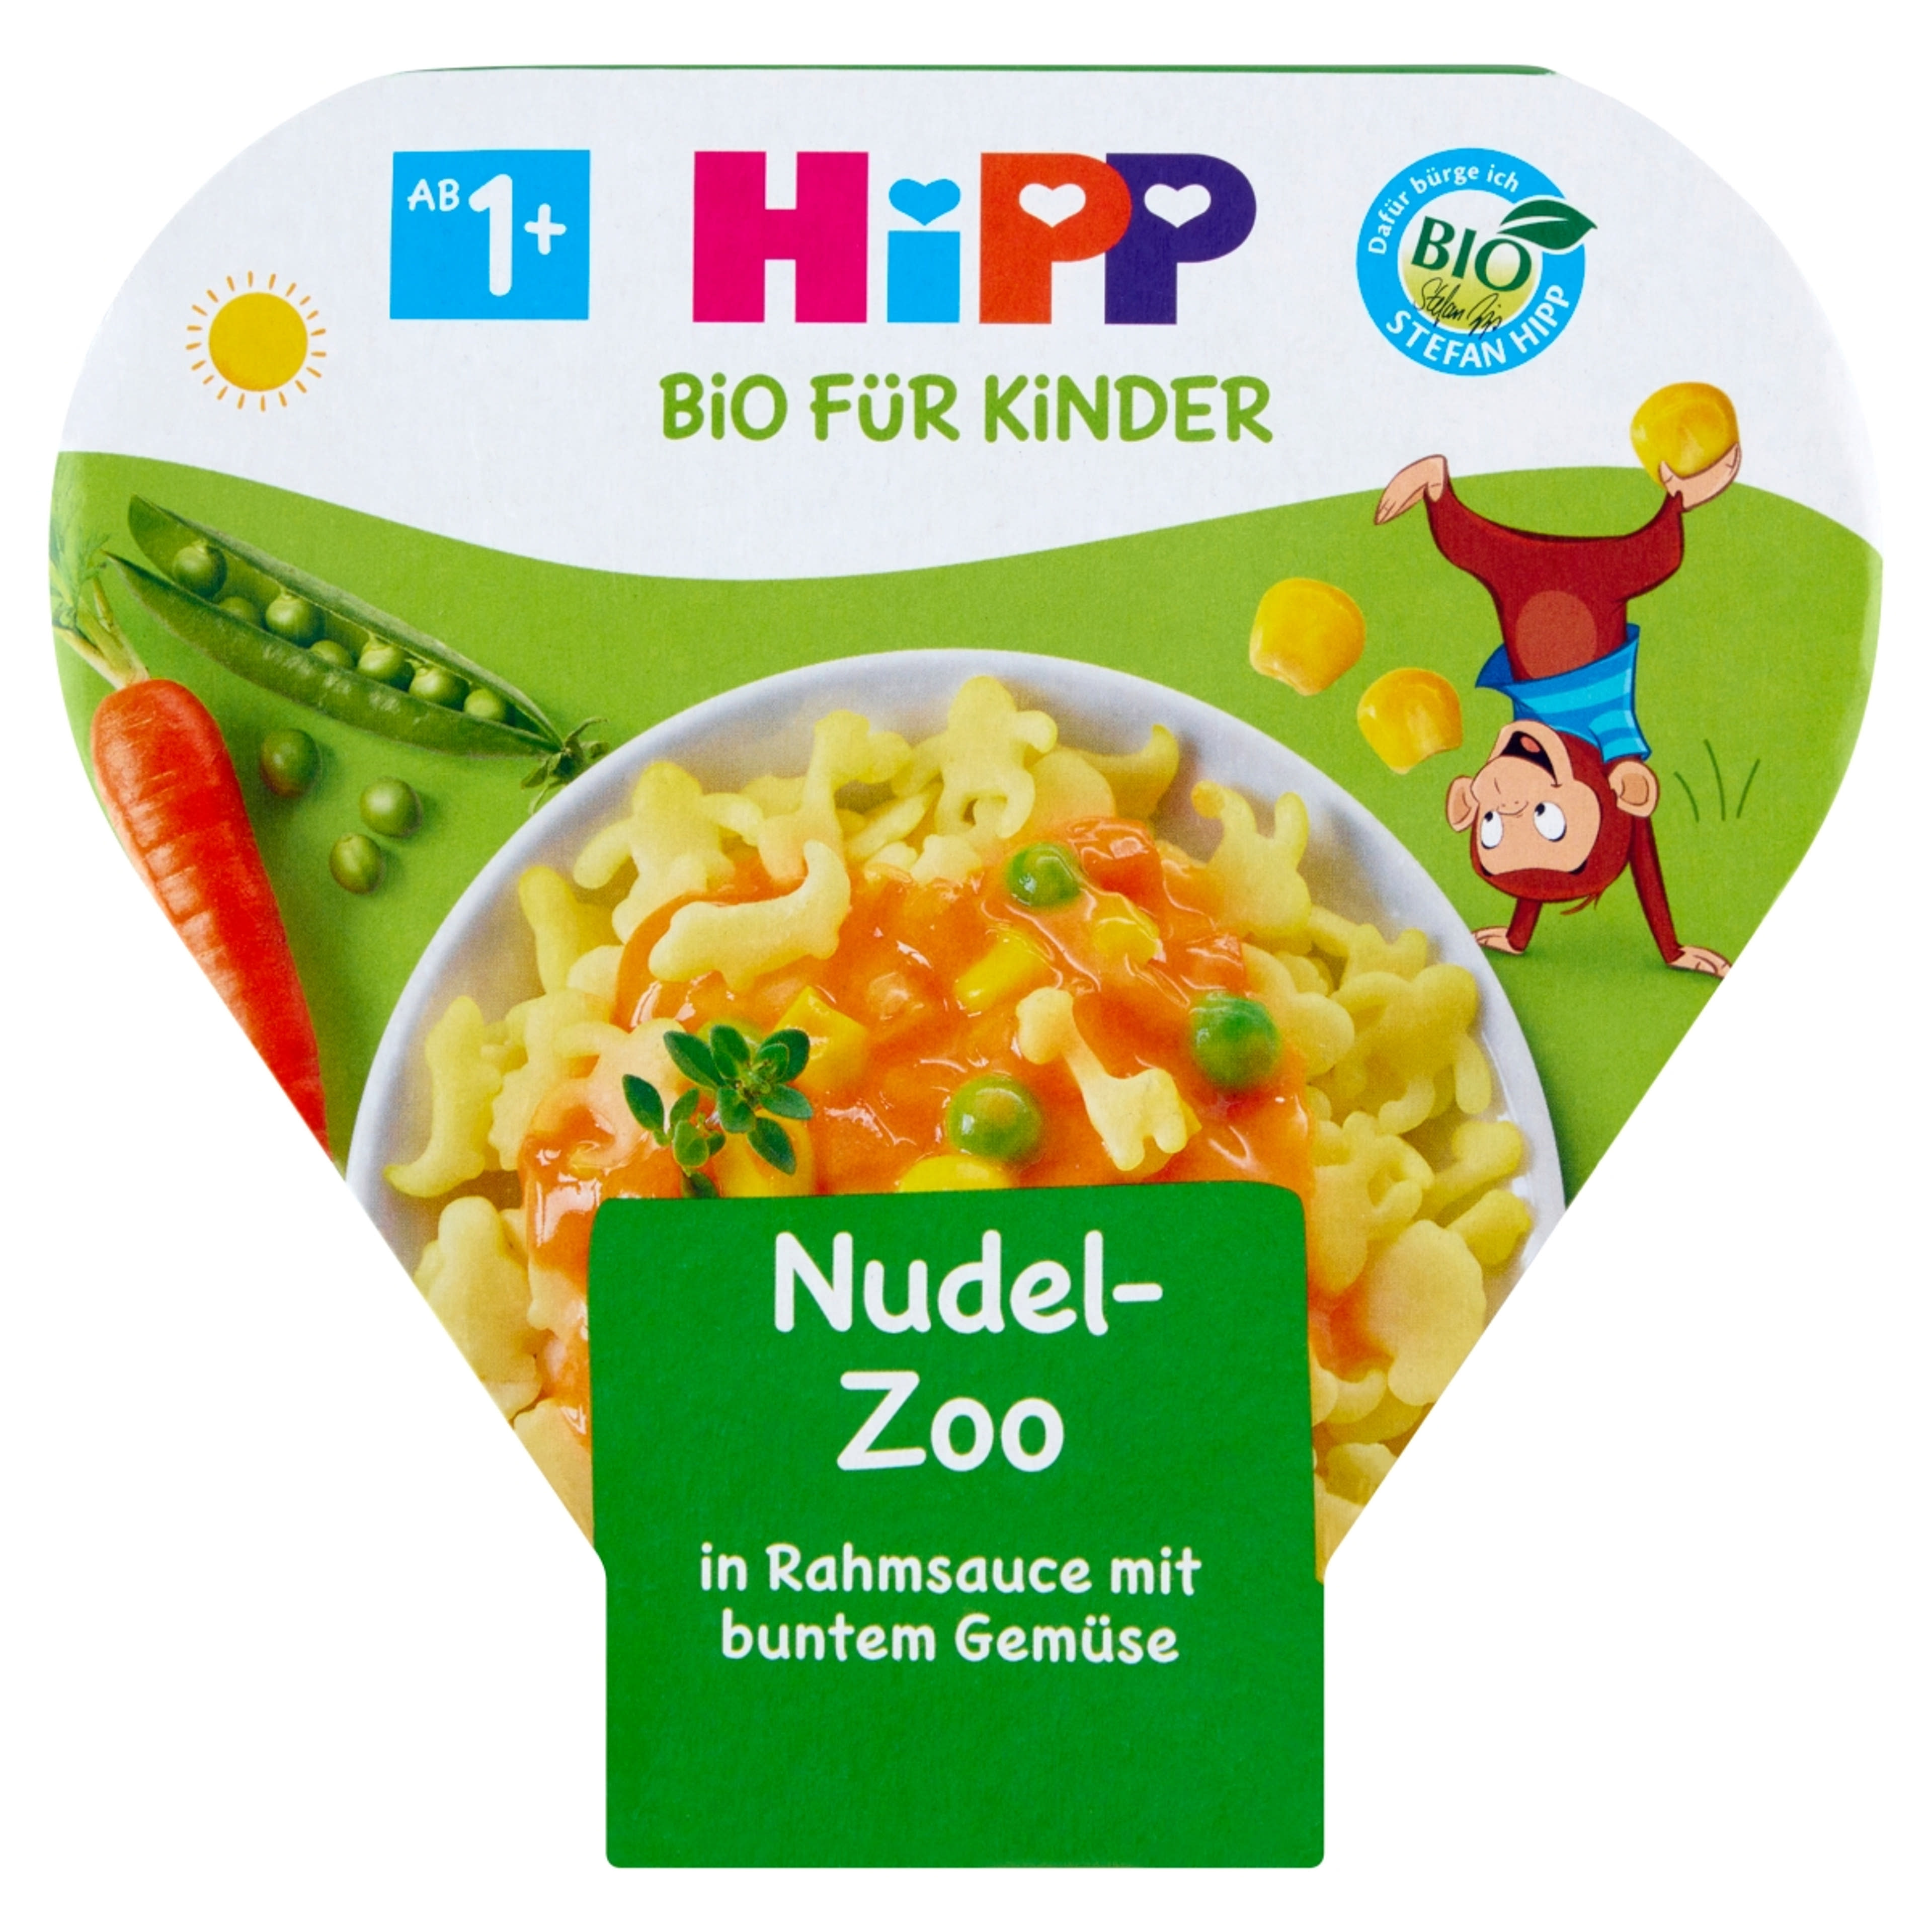 HiPP Bio állatfigurás tészta zöldségekkel tejszínes szószban tésztakészítmény 1 éves kortól - 250 g